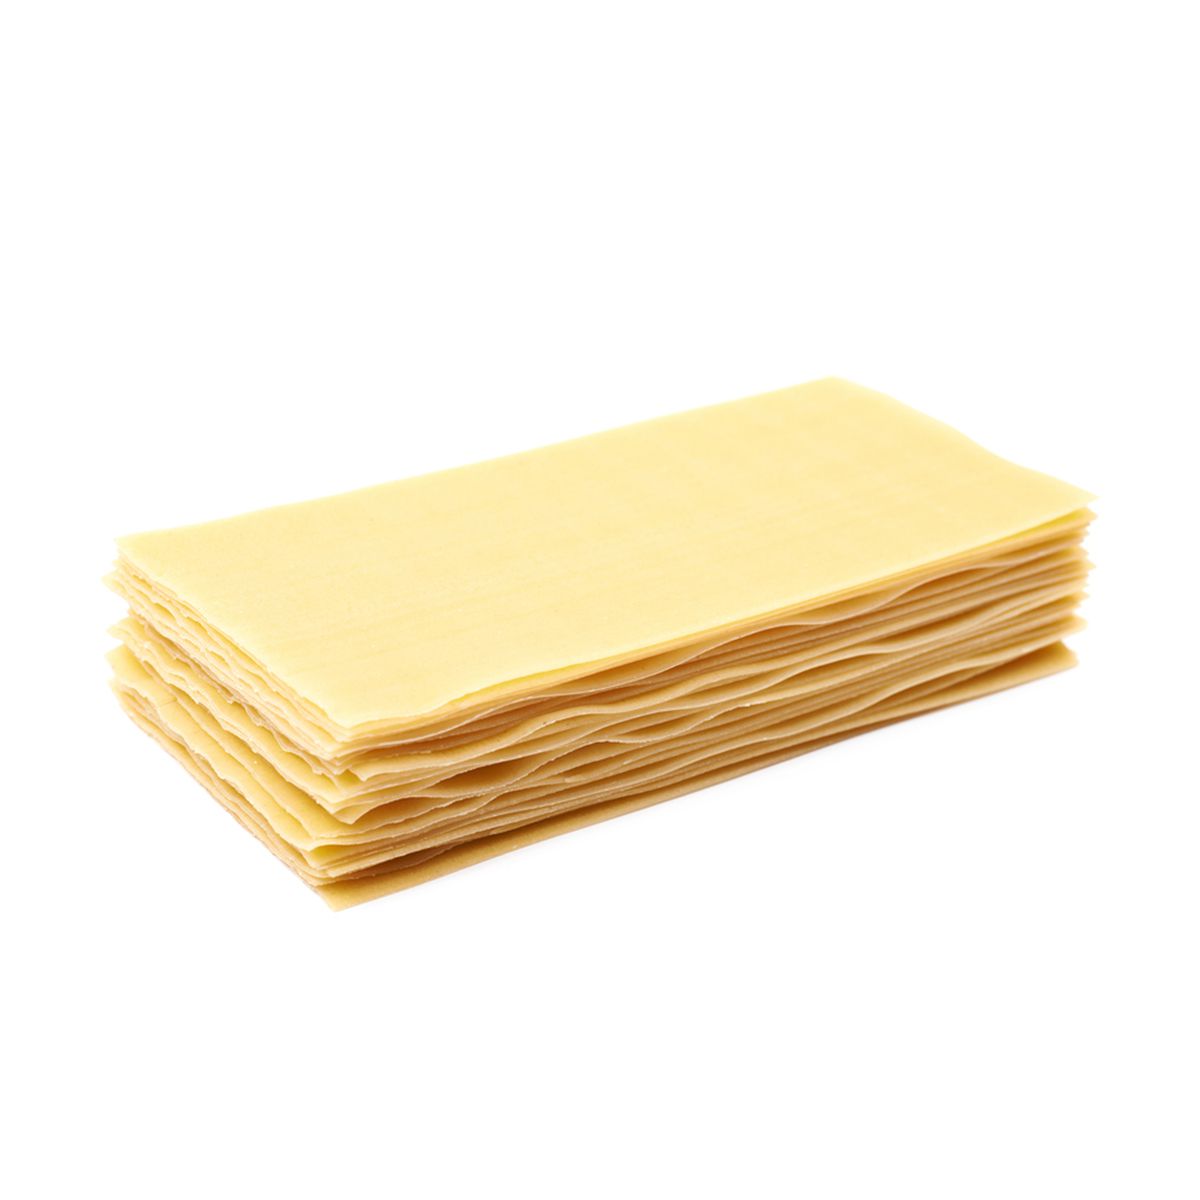 Barilla Oven-Ready Lasagna Pasta Sheets 9 oz